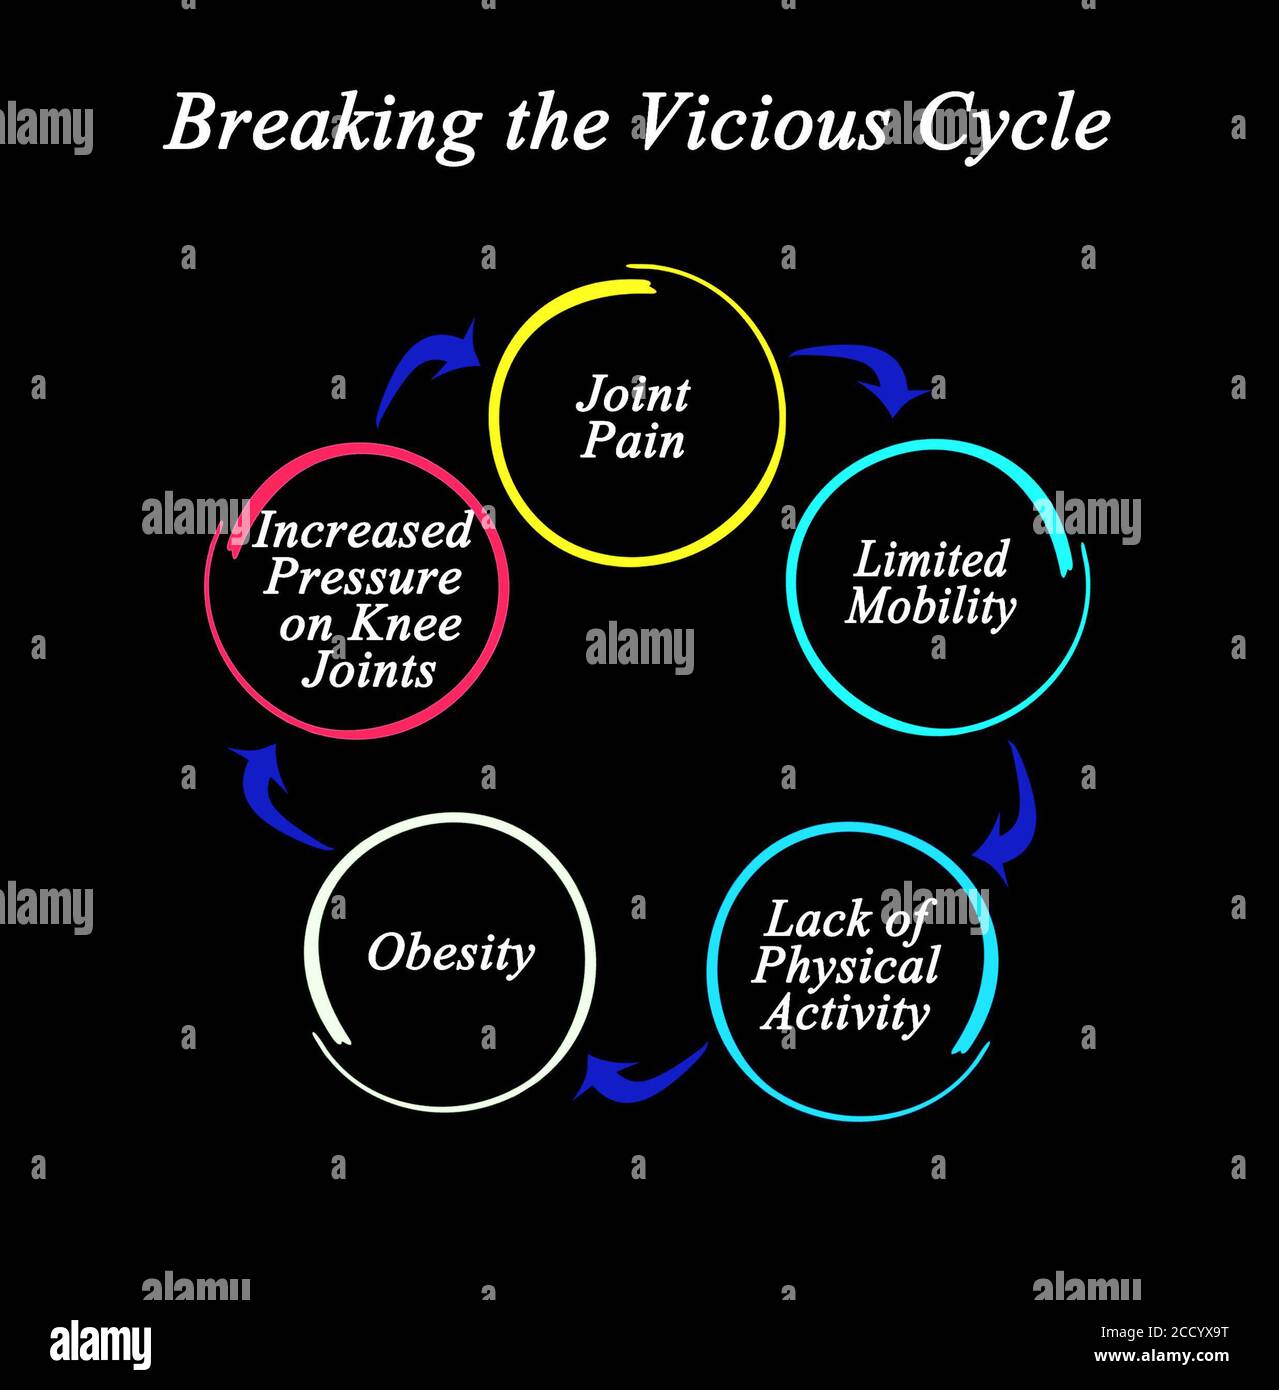 Vicious cycle